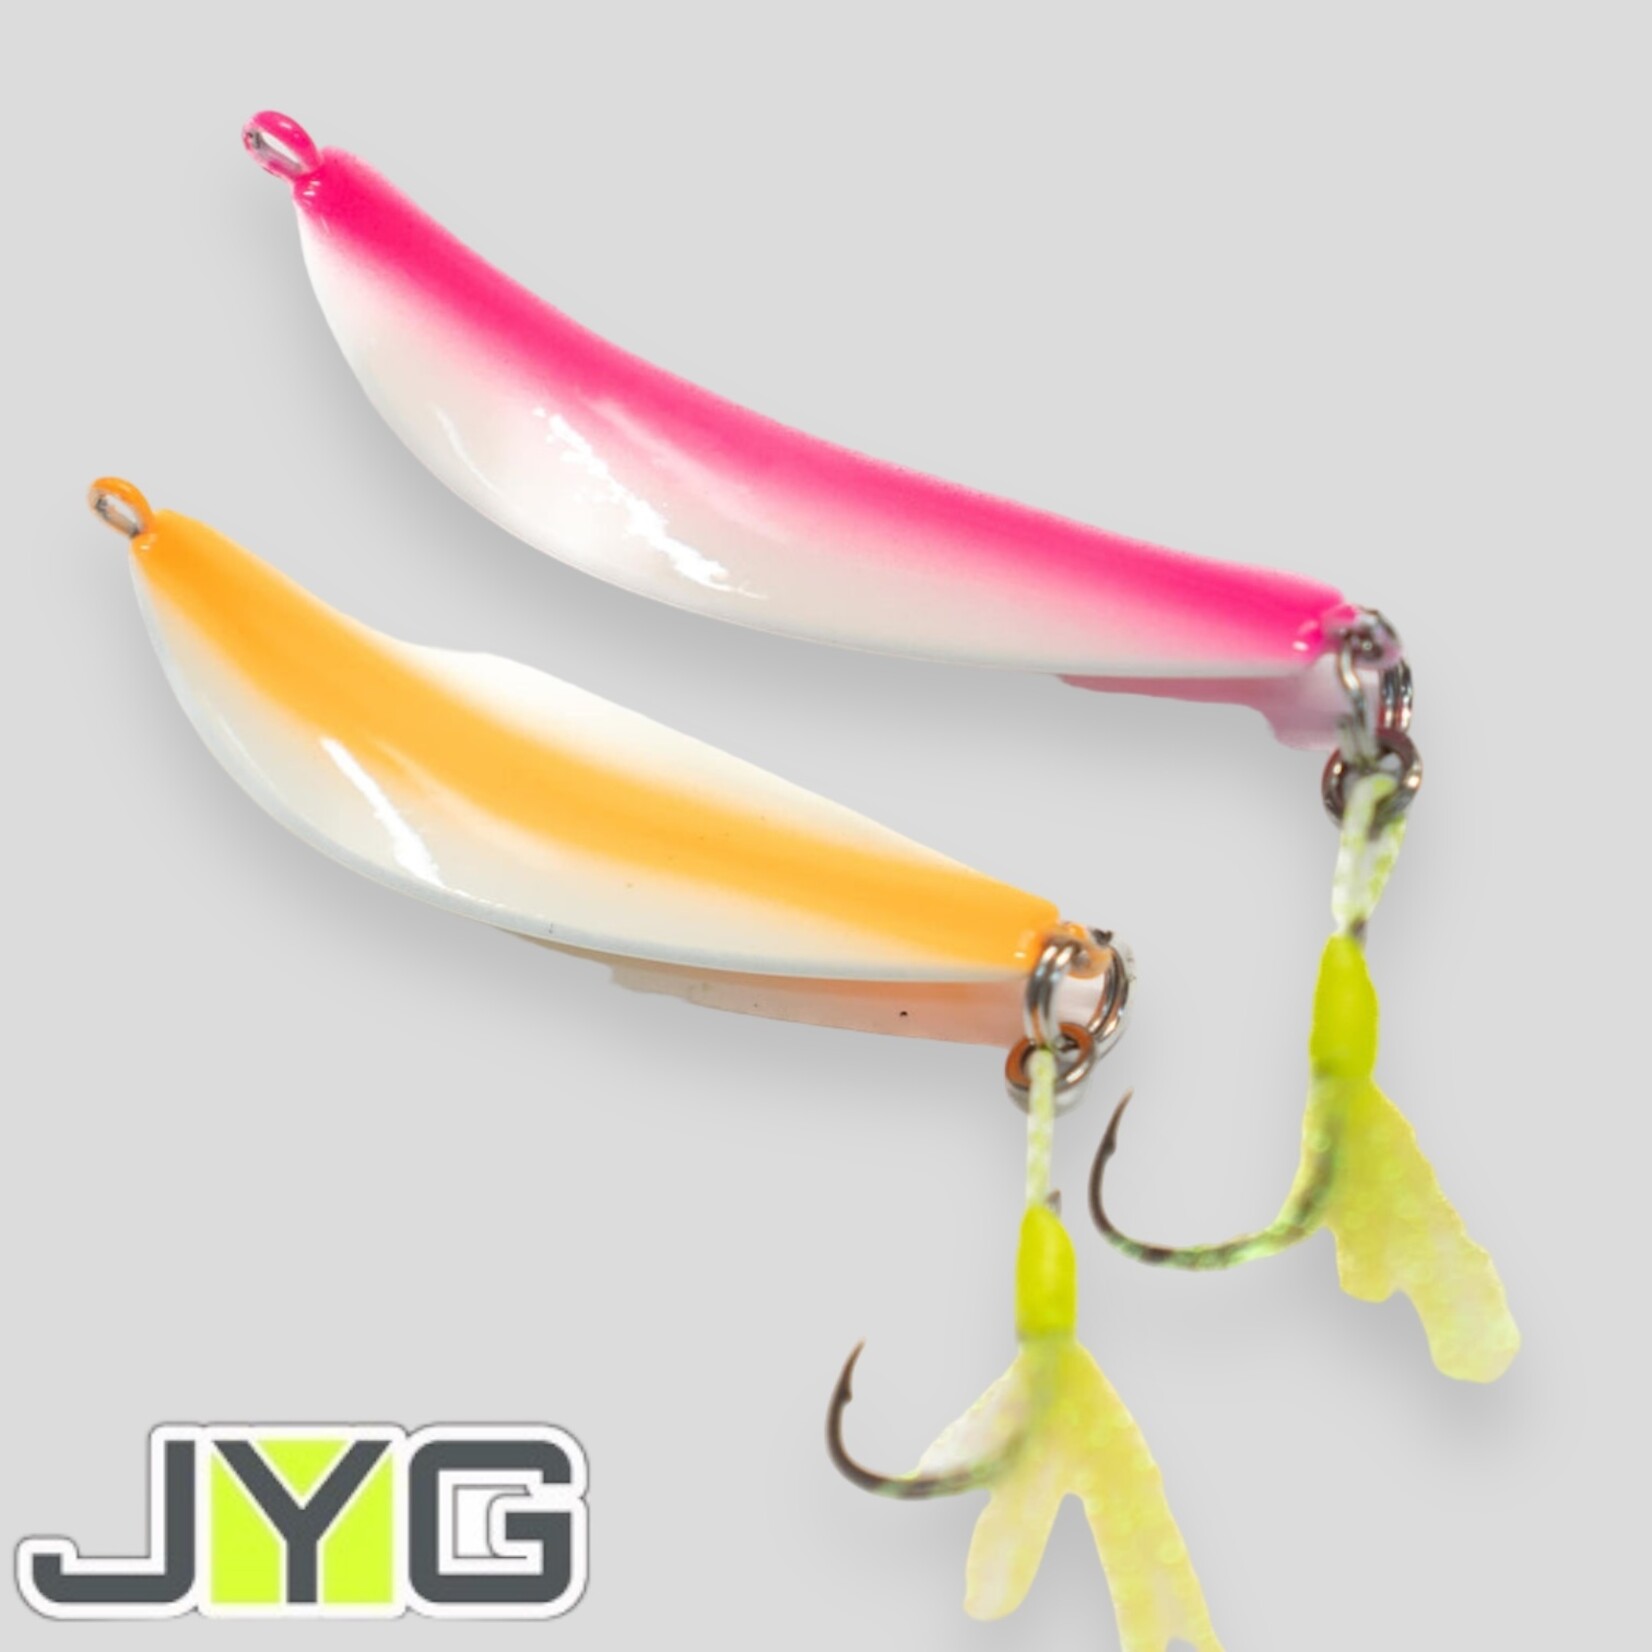 JYG Pro Fishing JYG PRO MYCRO